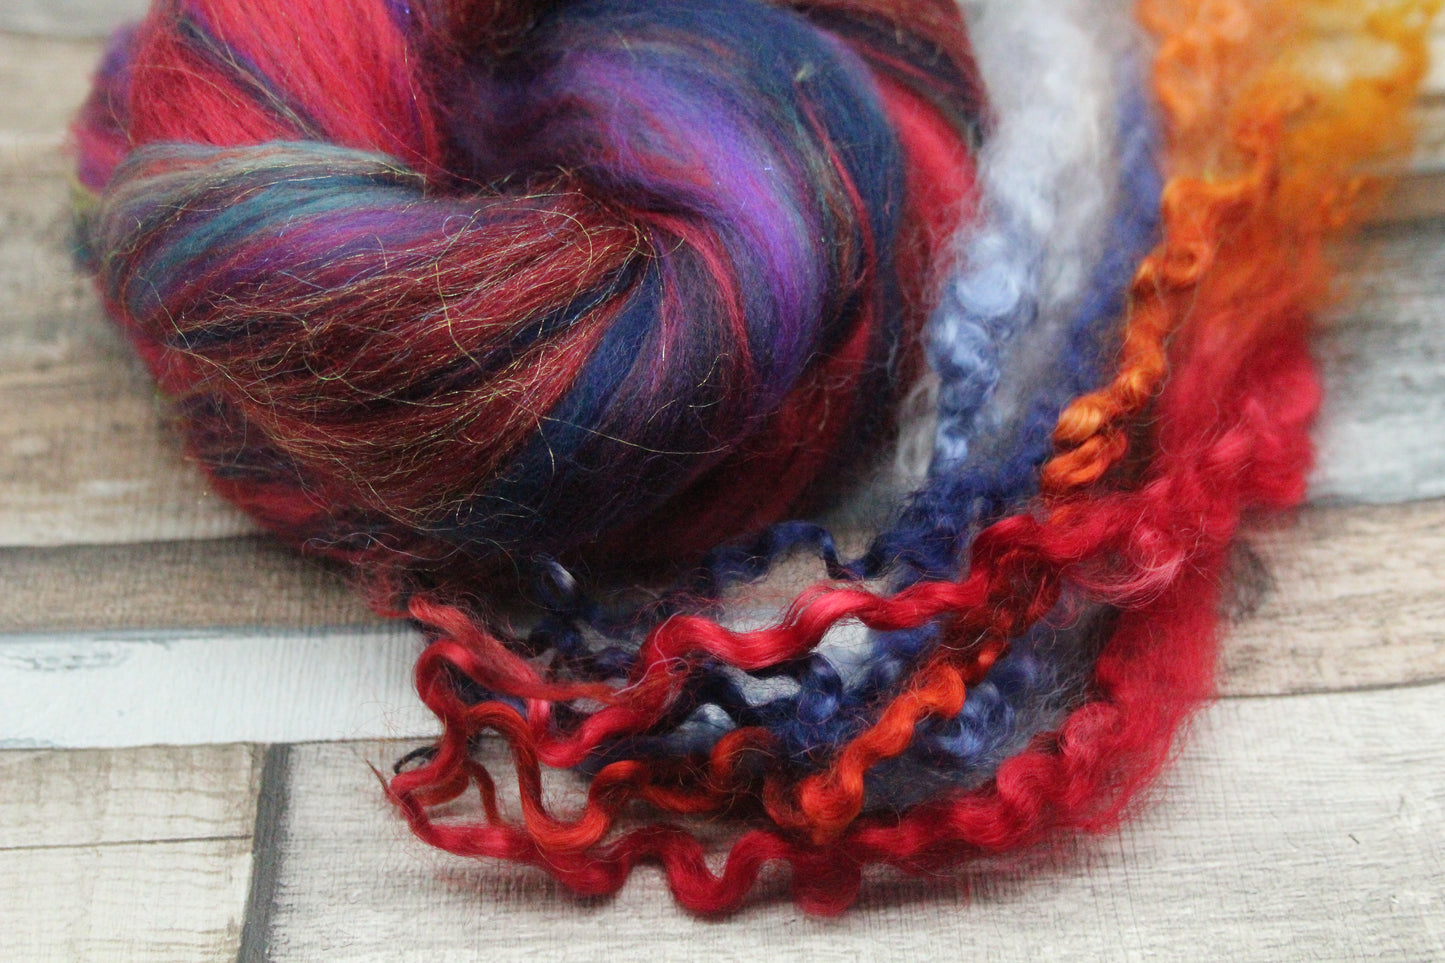 Merino Wool Blend - Red Purple Blue Green - 27 grams / 0.9 oz  - Fibre for felting, weaving or spinning